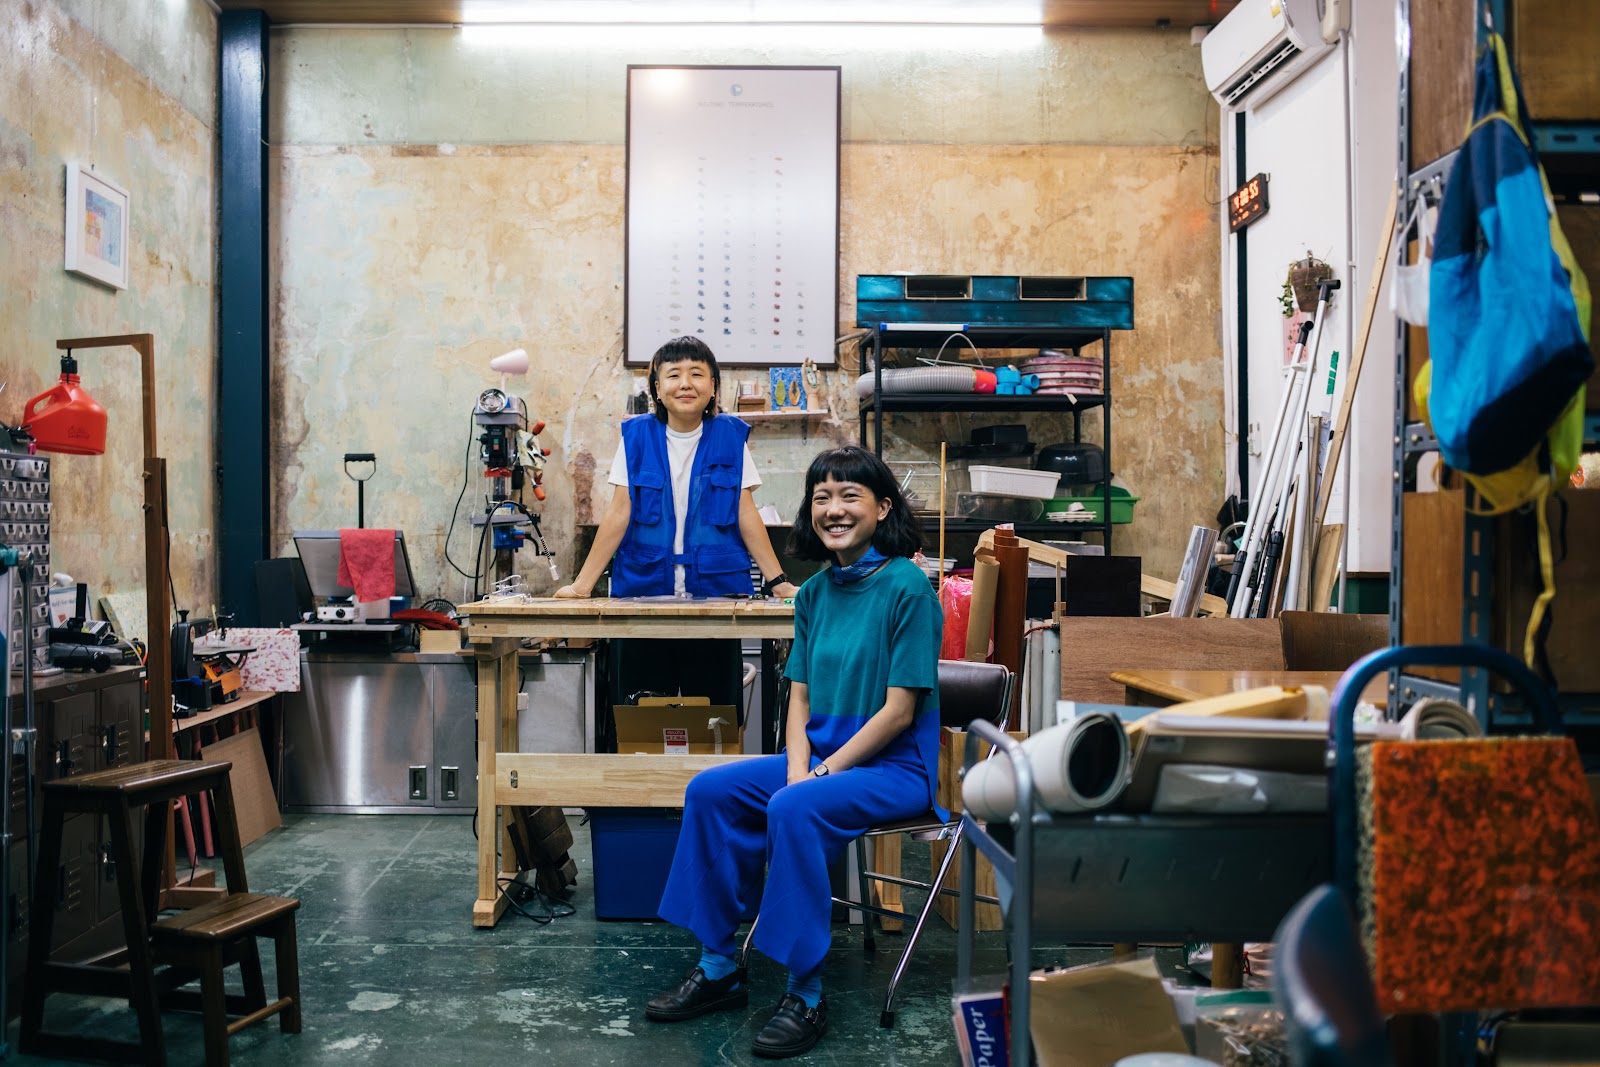 A Thing That Is Pieces Studio : 13 ร้านใหม่ของนักสร้างสรรค์ย่านทรงวาด เติมสีสันให้ย่านเก่าของอากงอาม่ามีชีวิตชีวา